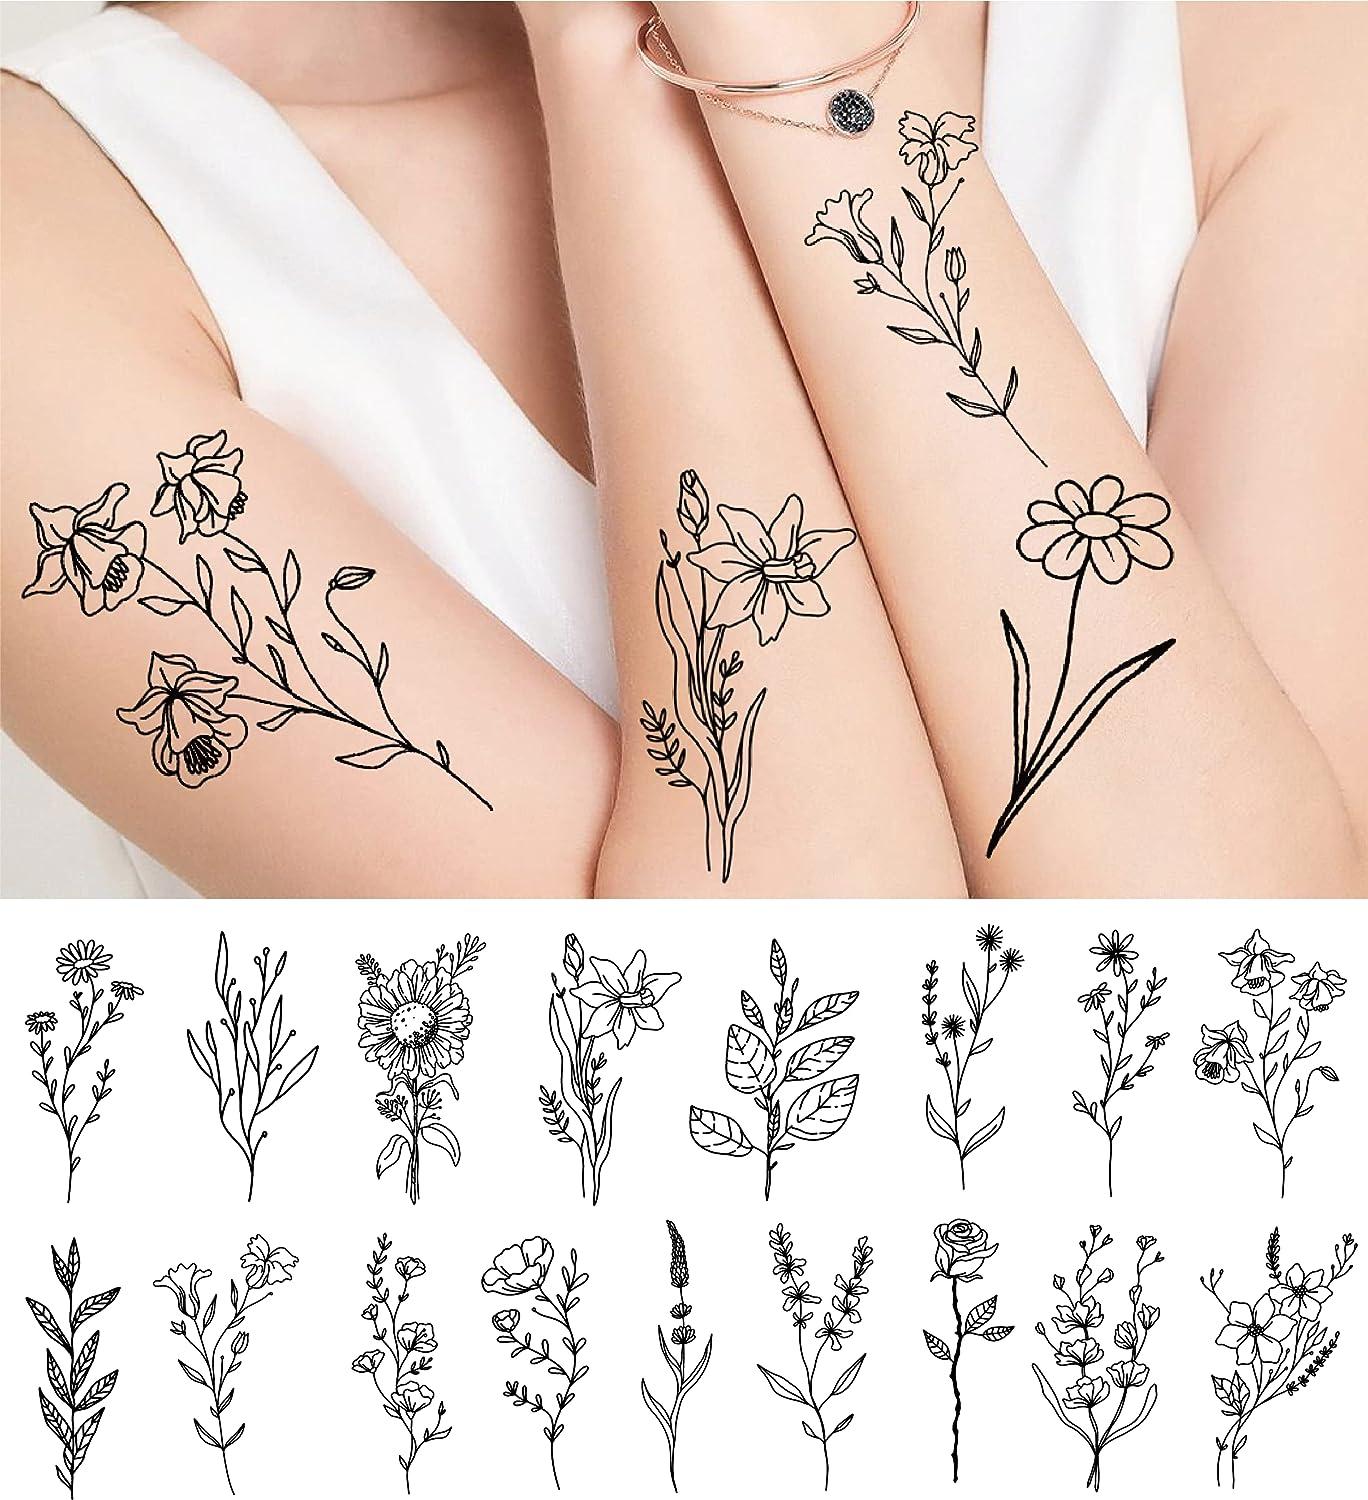 Temporary Tattoo 2 Flower Neck Tattoos - Etsy